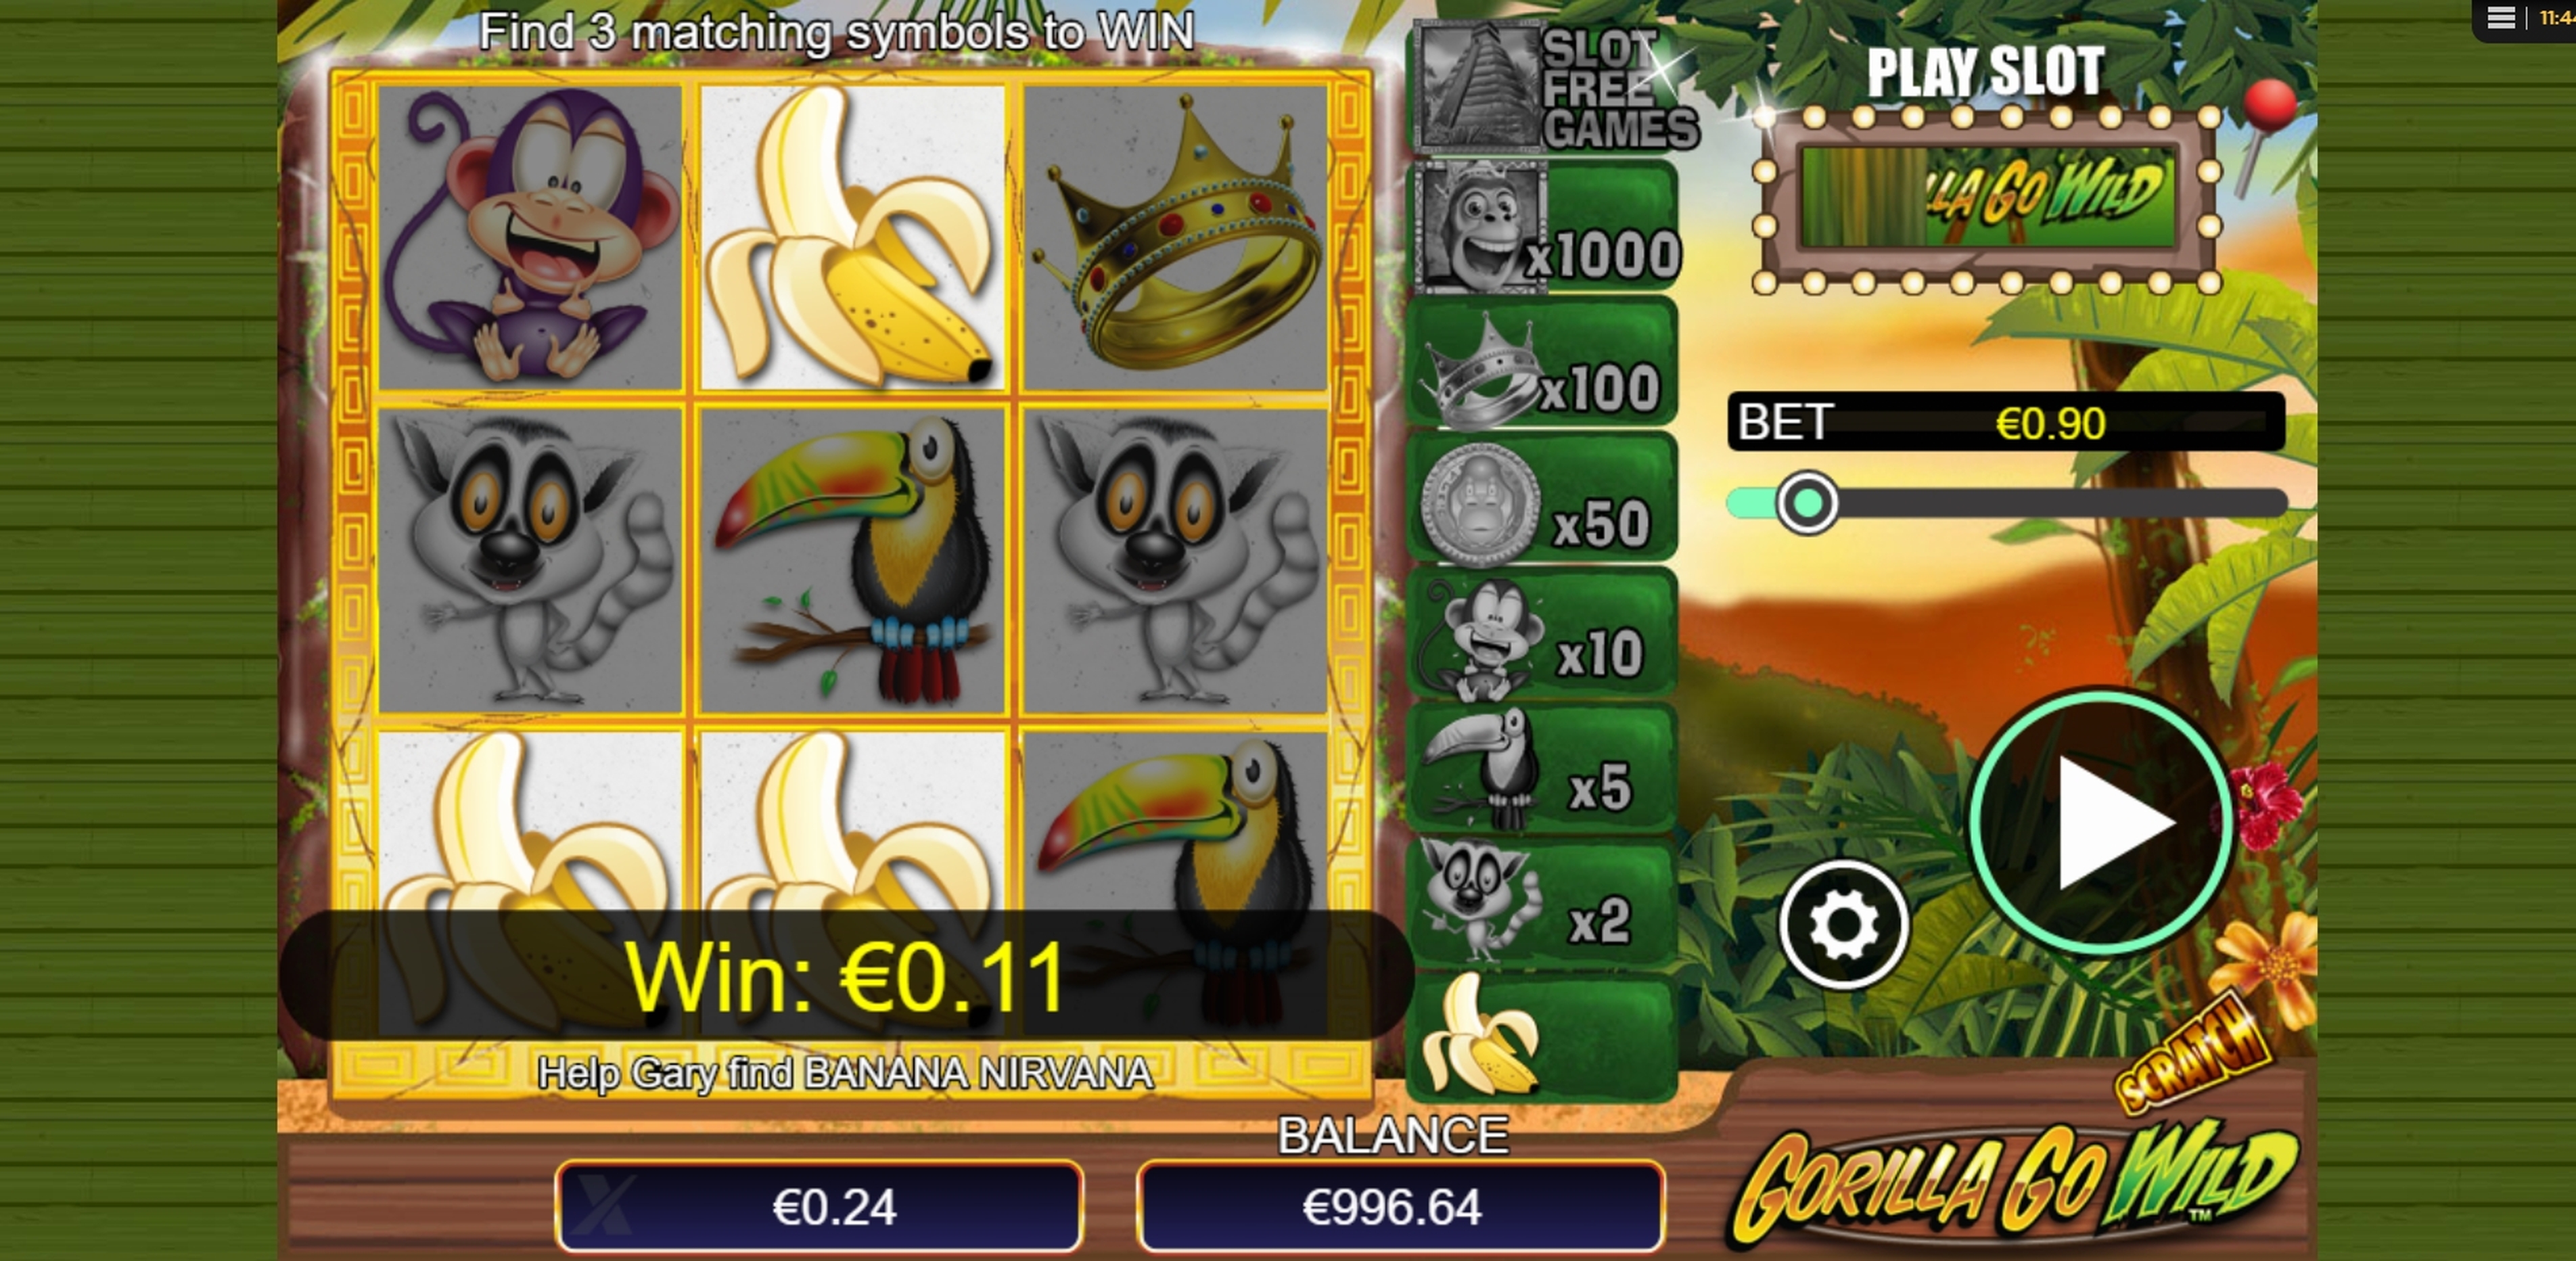 Win Money in Scratch Gorilla Go Wild Free Slot Game by NextGen Gaming